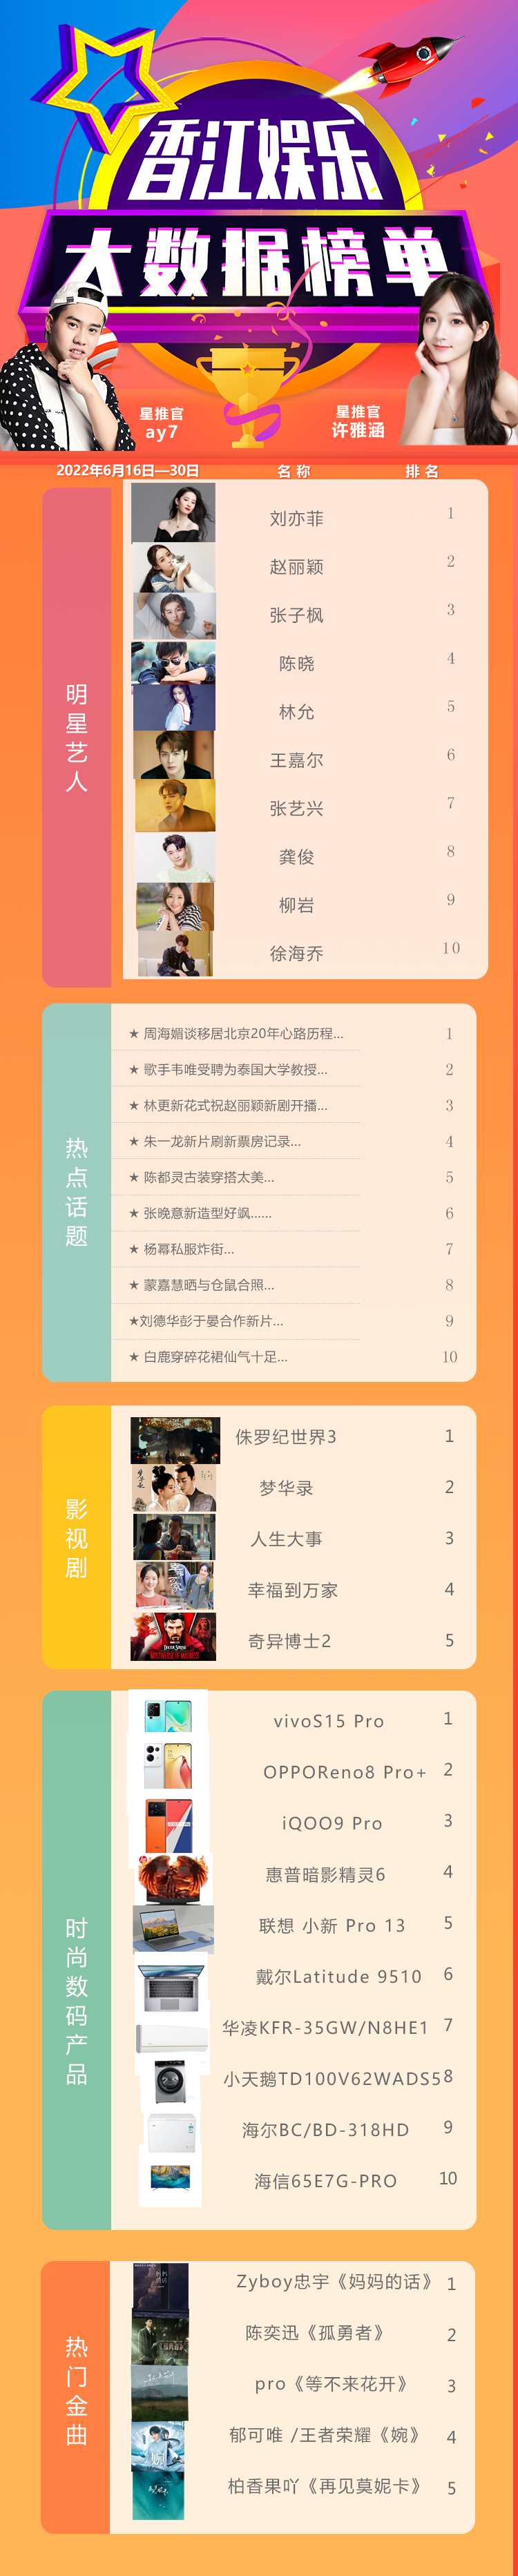 许雅涵+A y7「香江娱乐大数据榜」第六期上线发布